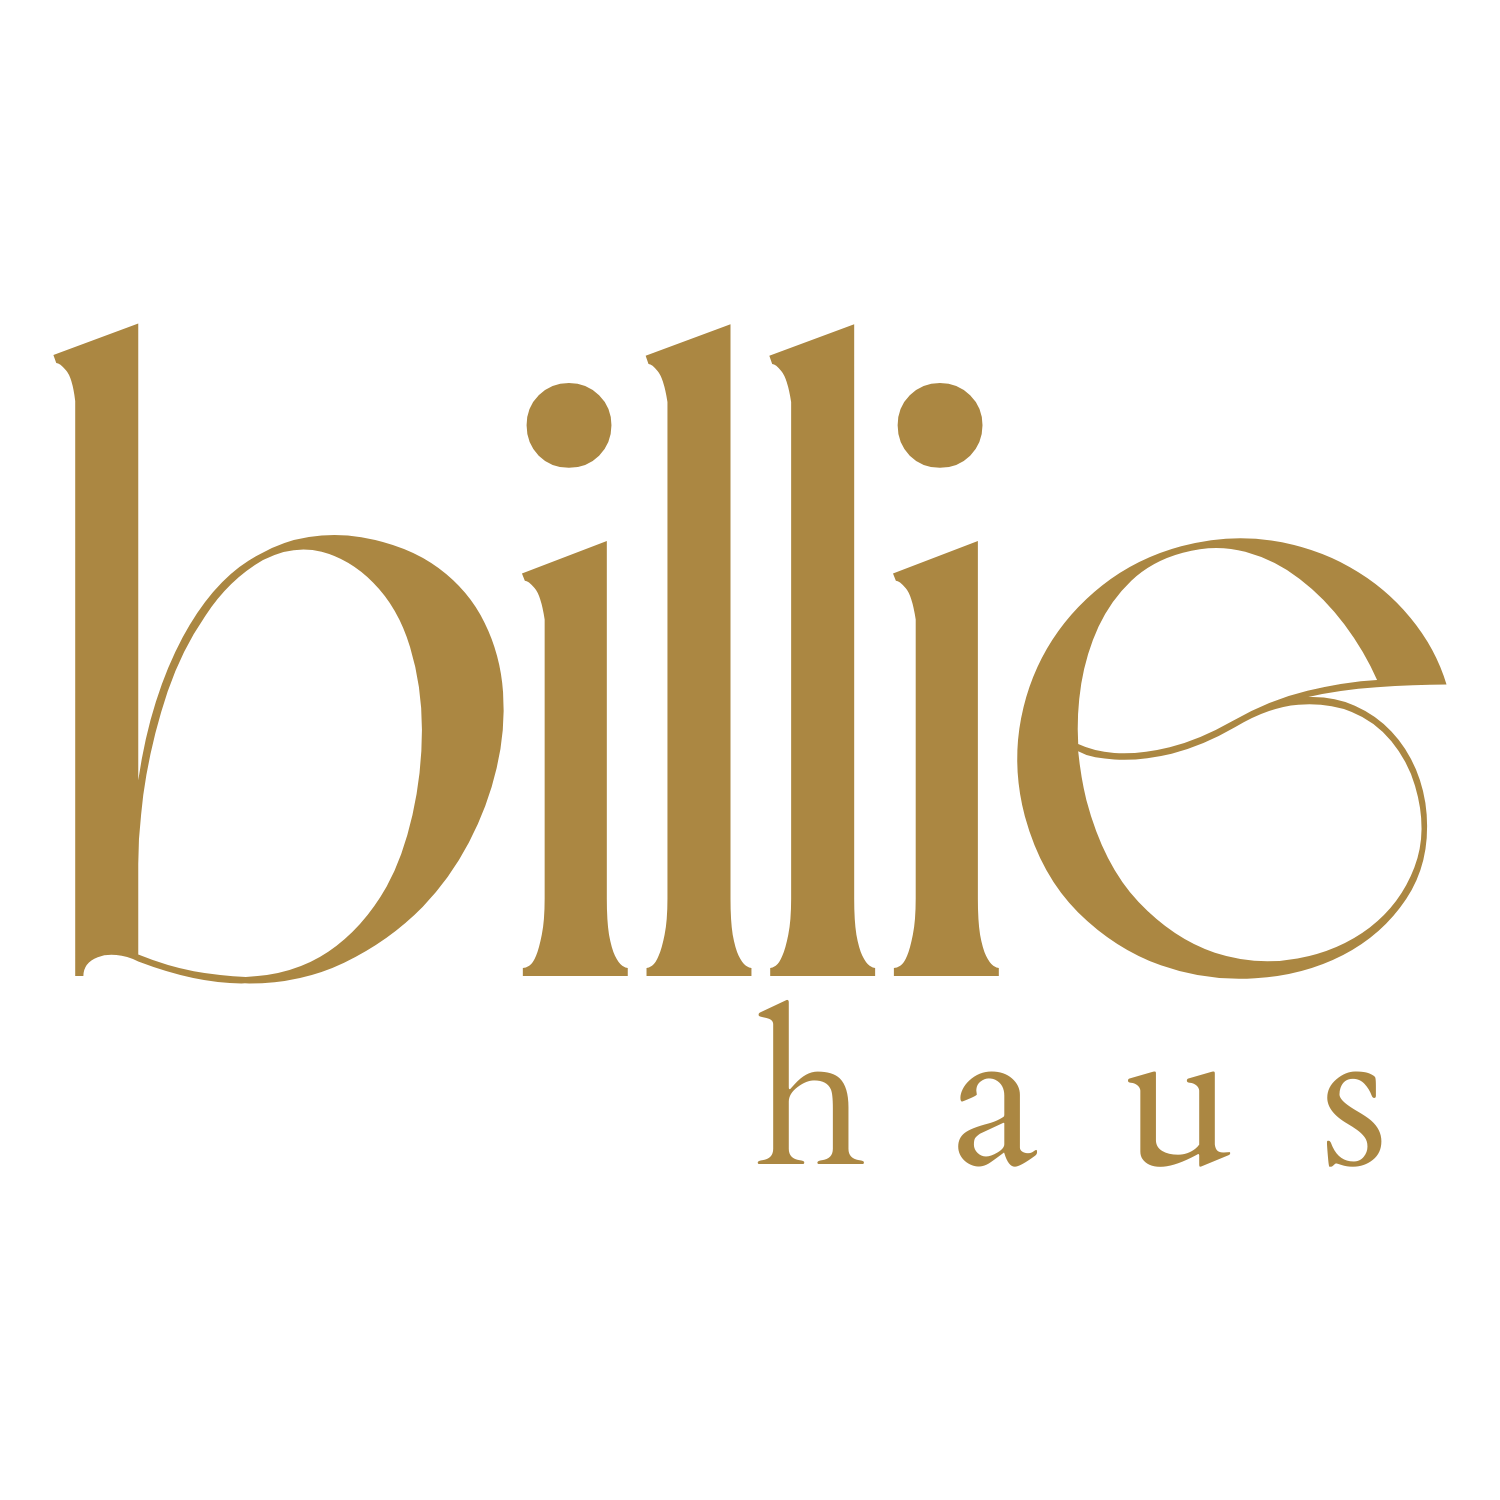 Billie Haus